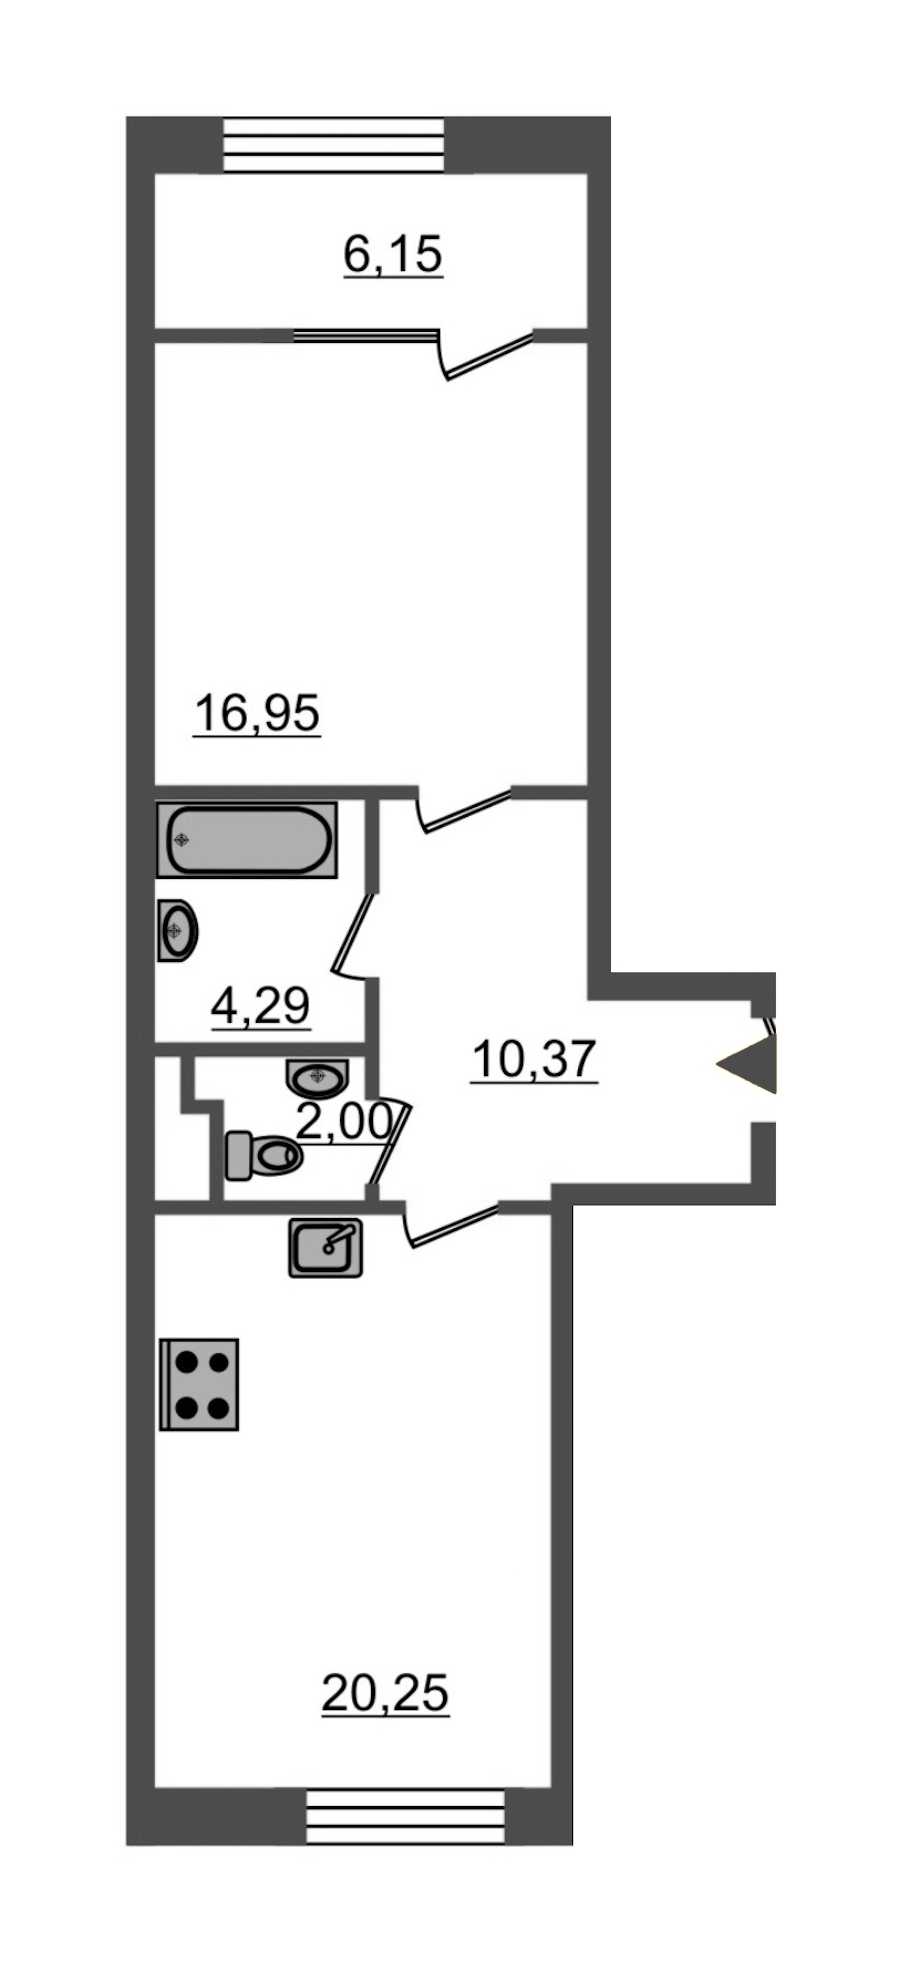 Однокомнатная квартира в Эталон ЛенСпецСМУ: площадь 59.8 м2 , этаж: 2 – купить в Санкт-Петербурге